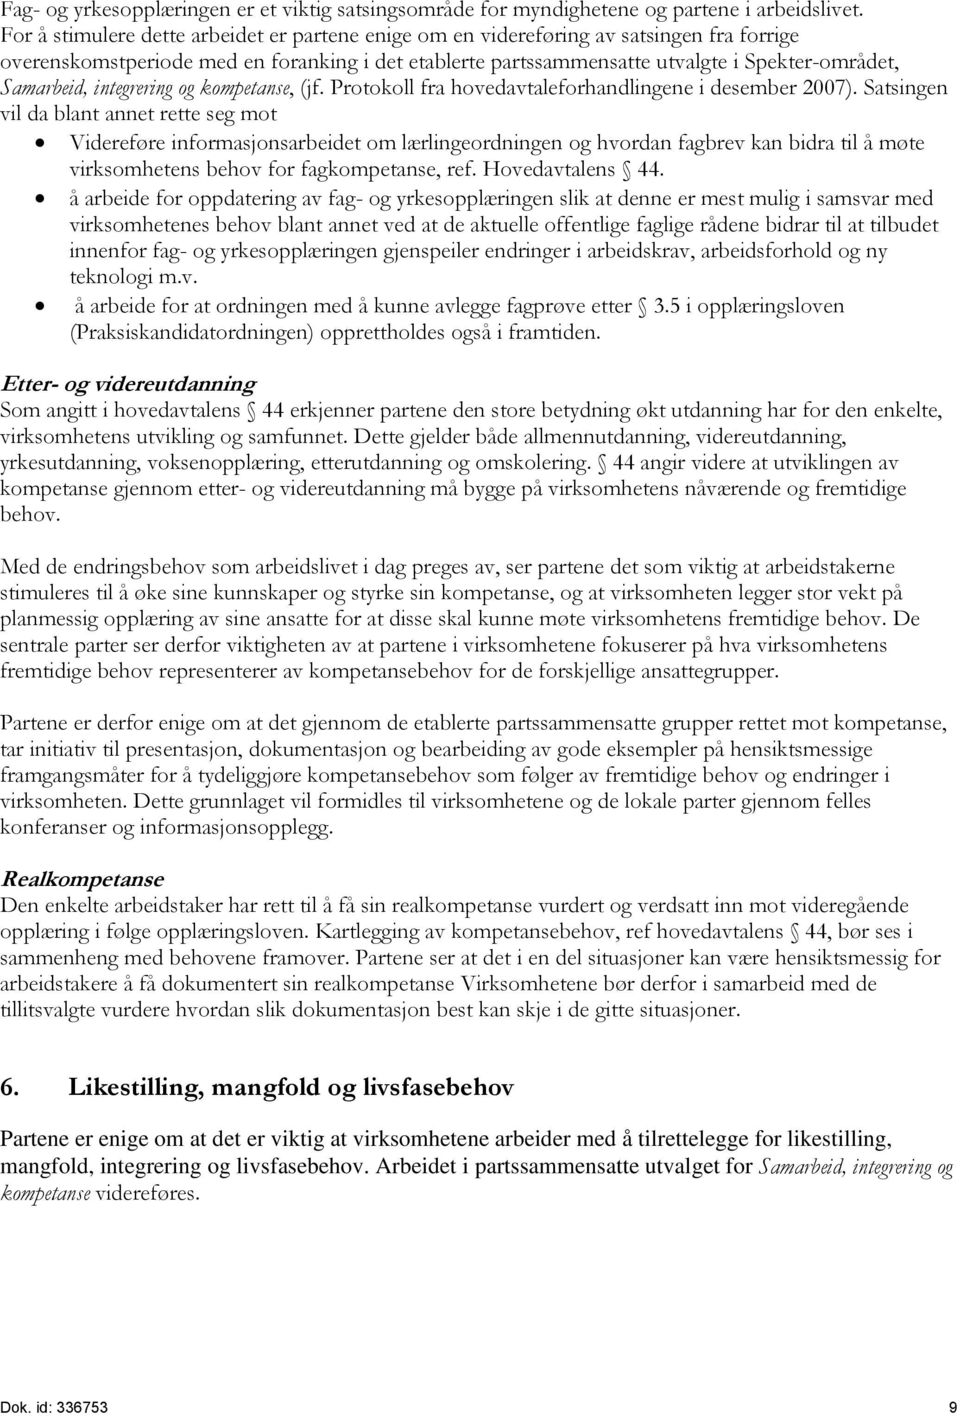 Samarbeid, integrering og kompetanse, (jf. Protokoll fra hovedavtaleforhandlingene i desember 2007).